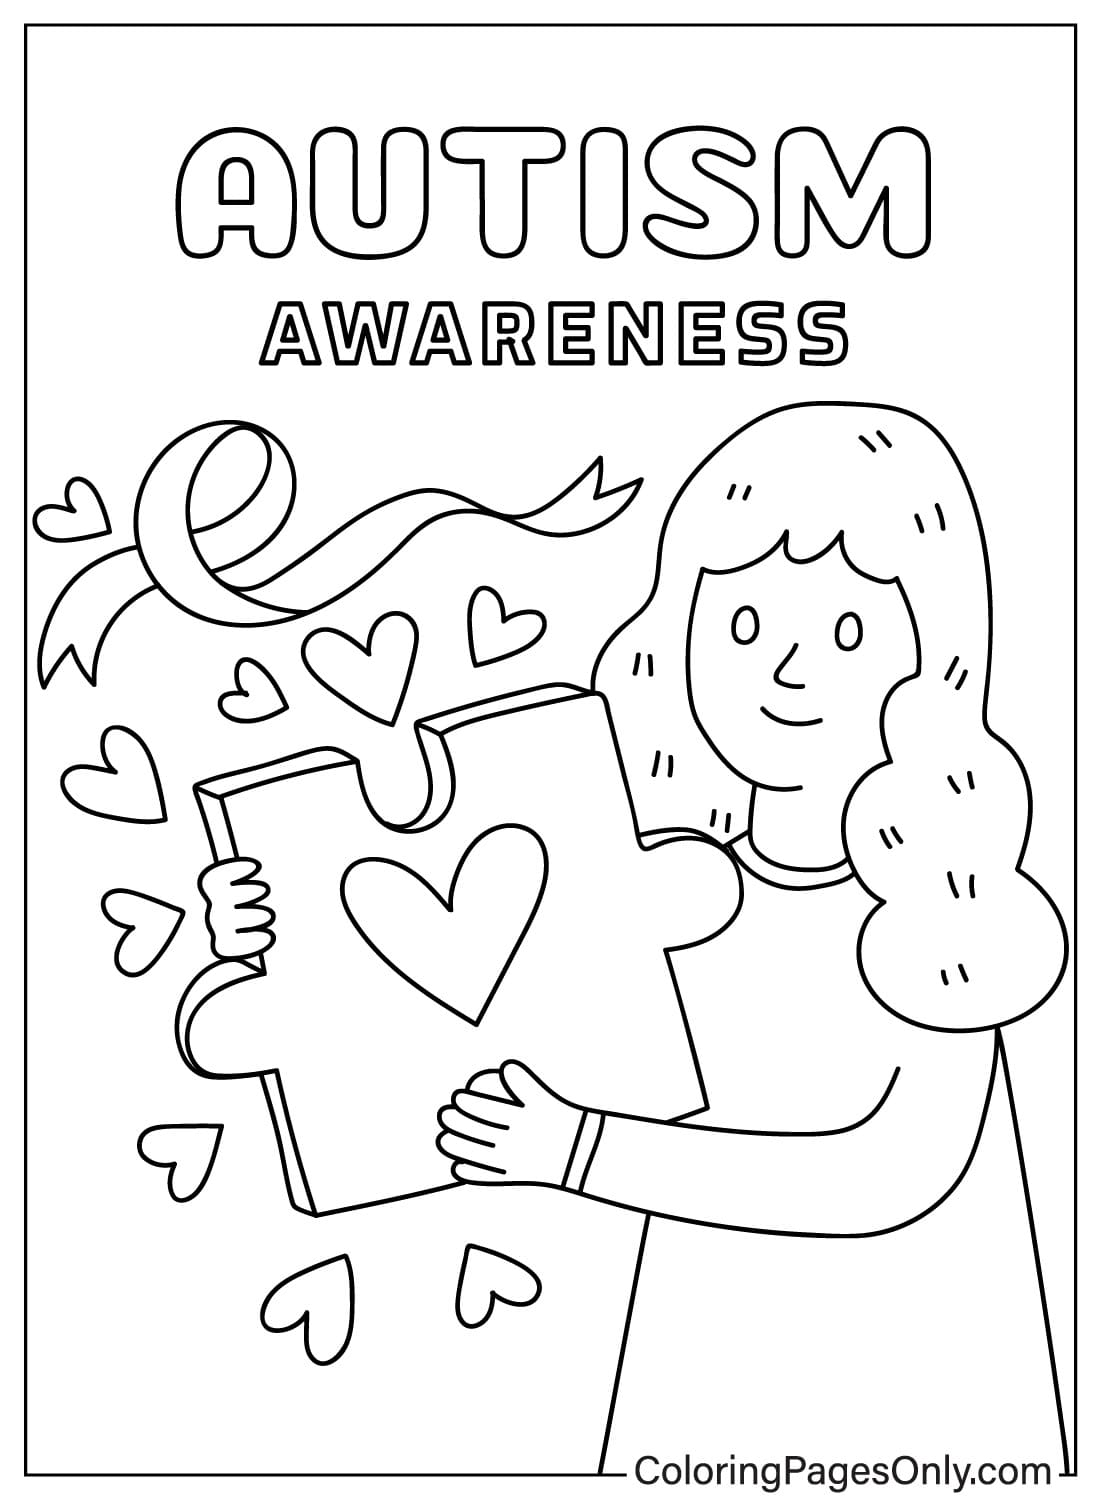 Farbblätter zur Aufklärung über Autismus vom Welttag der Aufklärung über Autismus